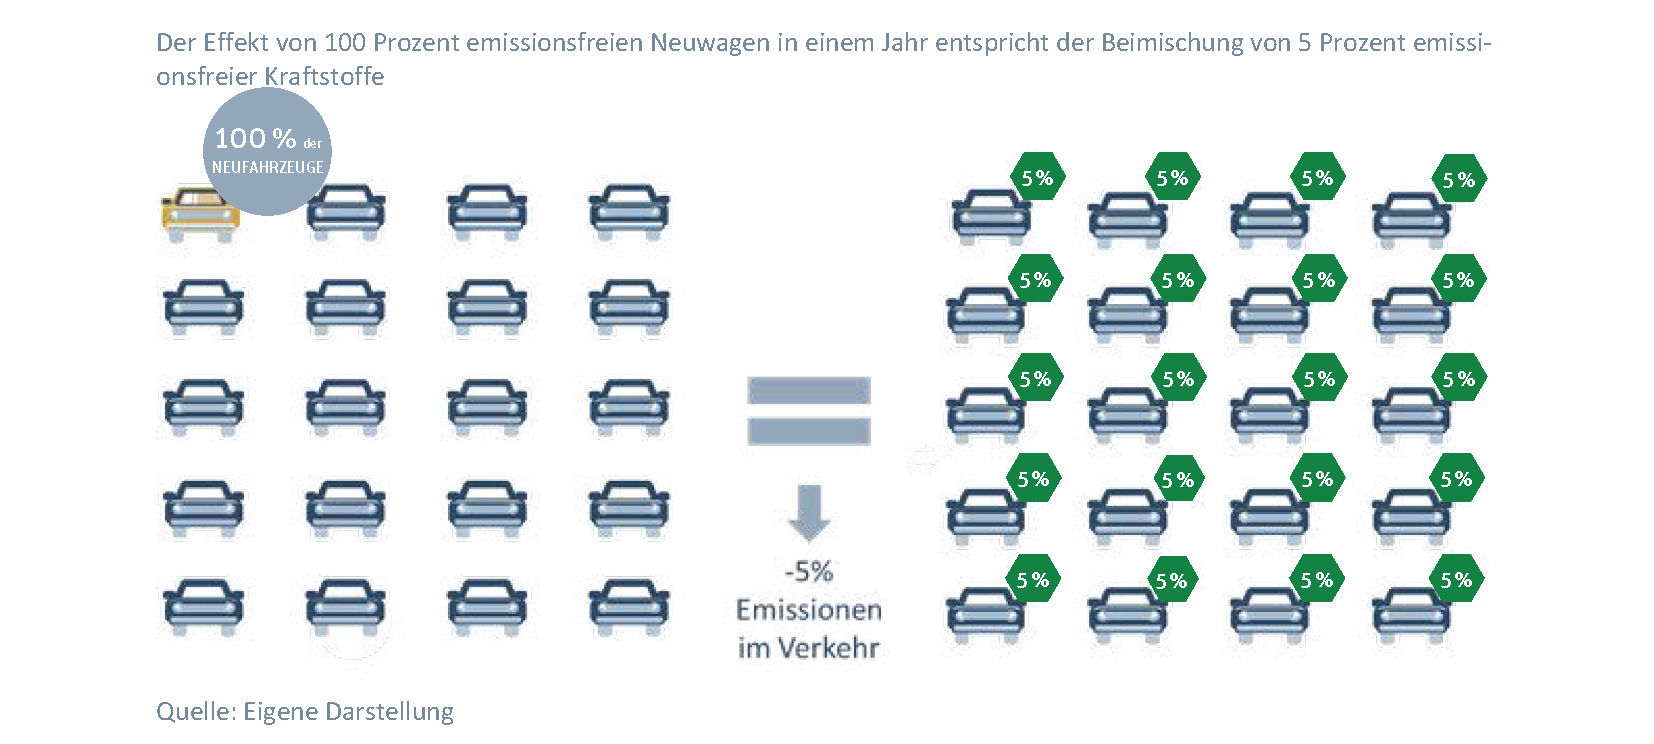 Emissionen im Verkehr